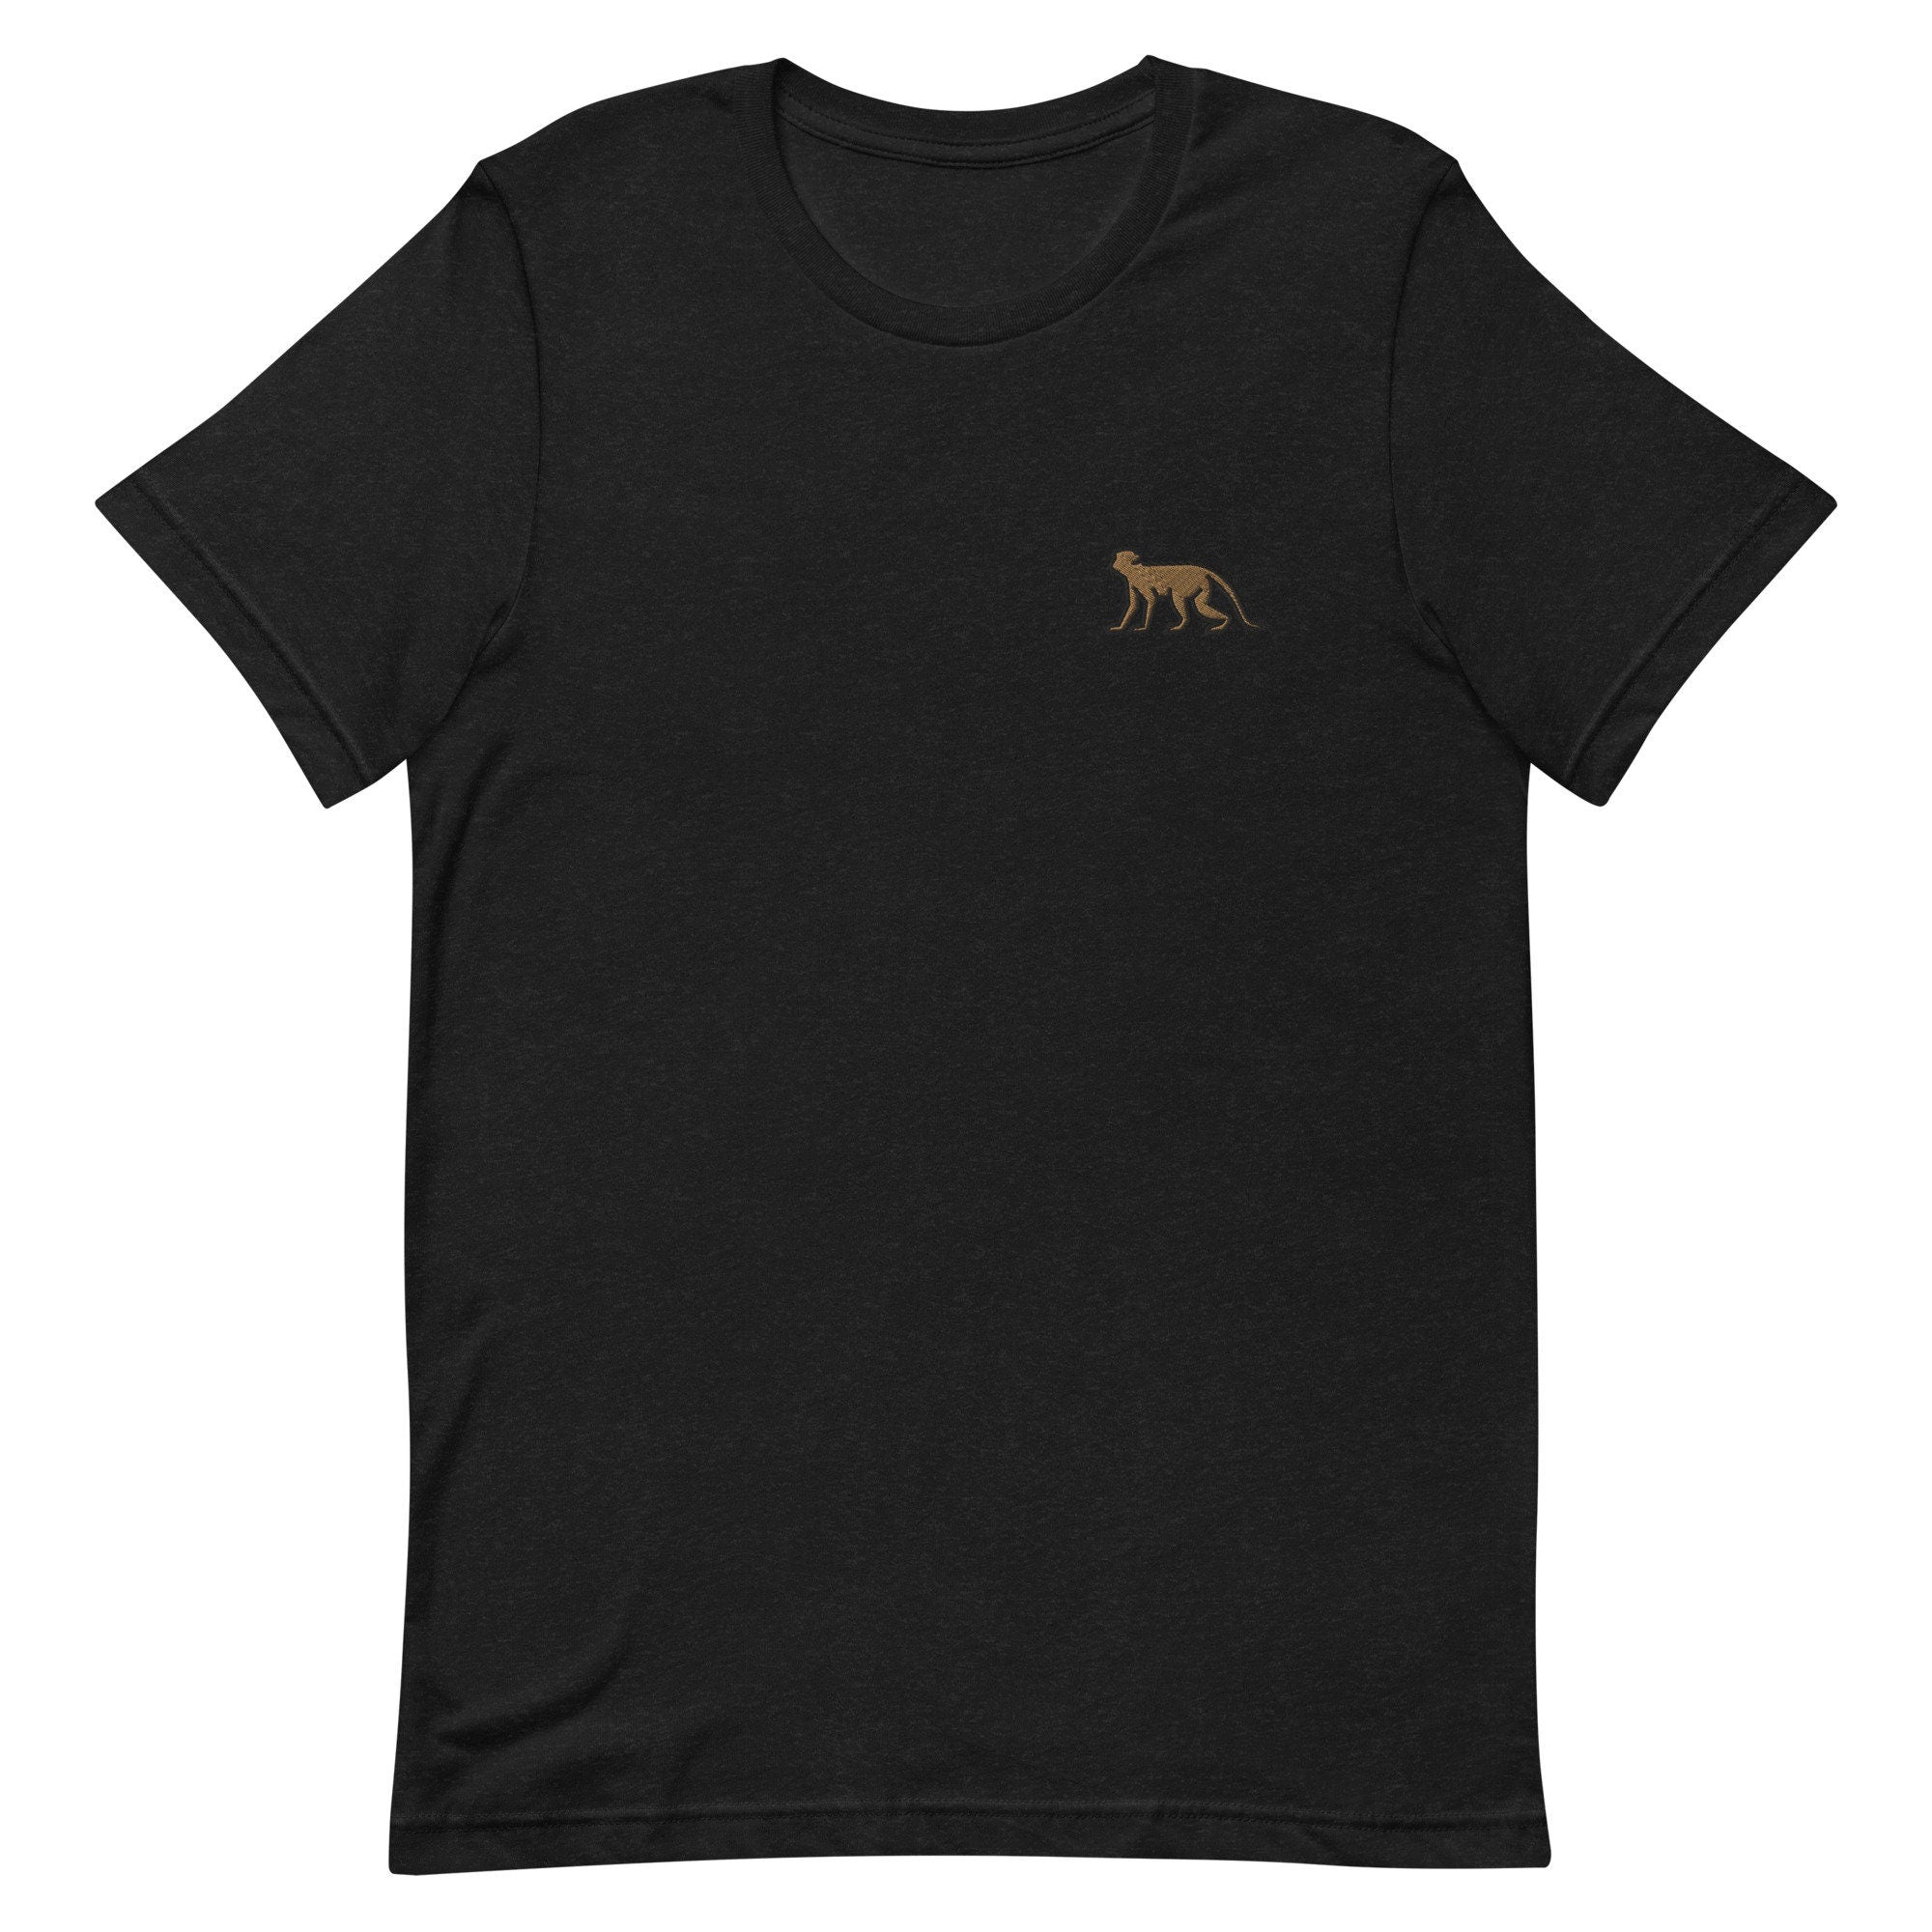 Monkey Premium Men's T-Shirt, Embroidered Men's T-Shirt Gift for Boyfriend, Men's Short Sleeve Shirt - Multiple Colors